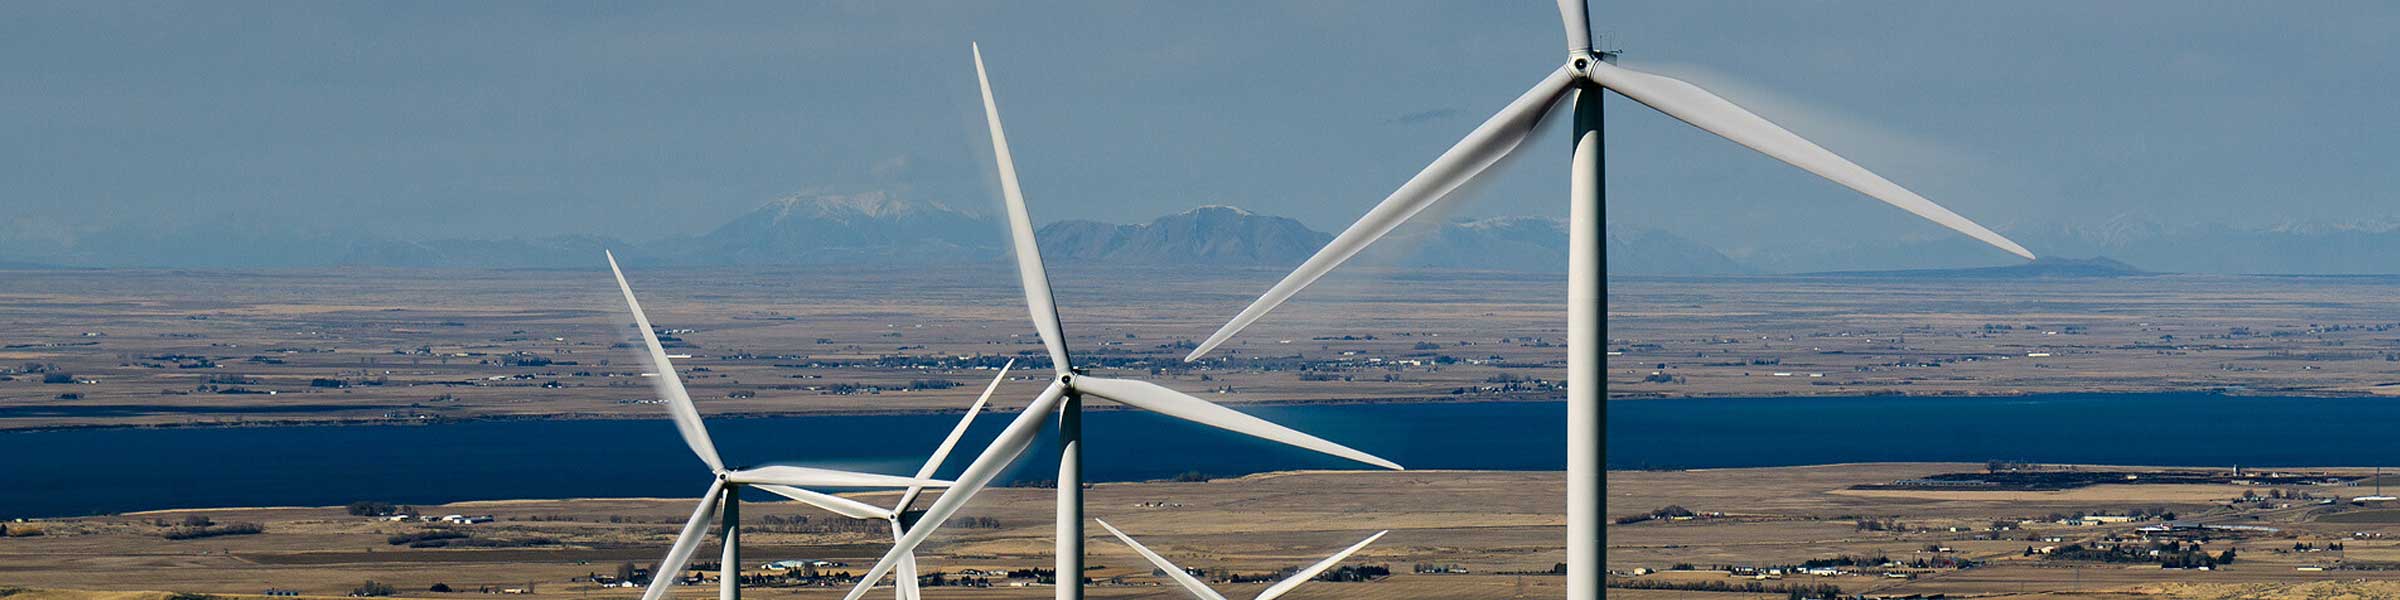 Photo of wind energy turbine windmills.